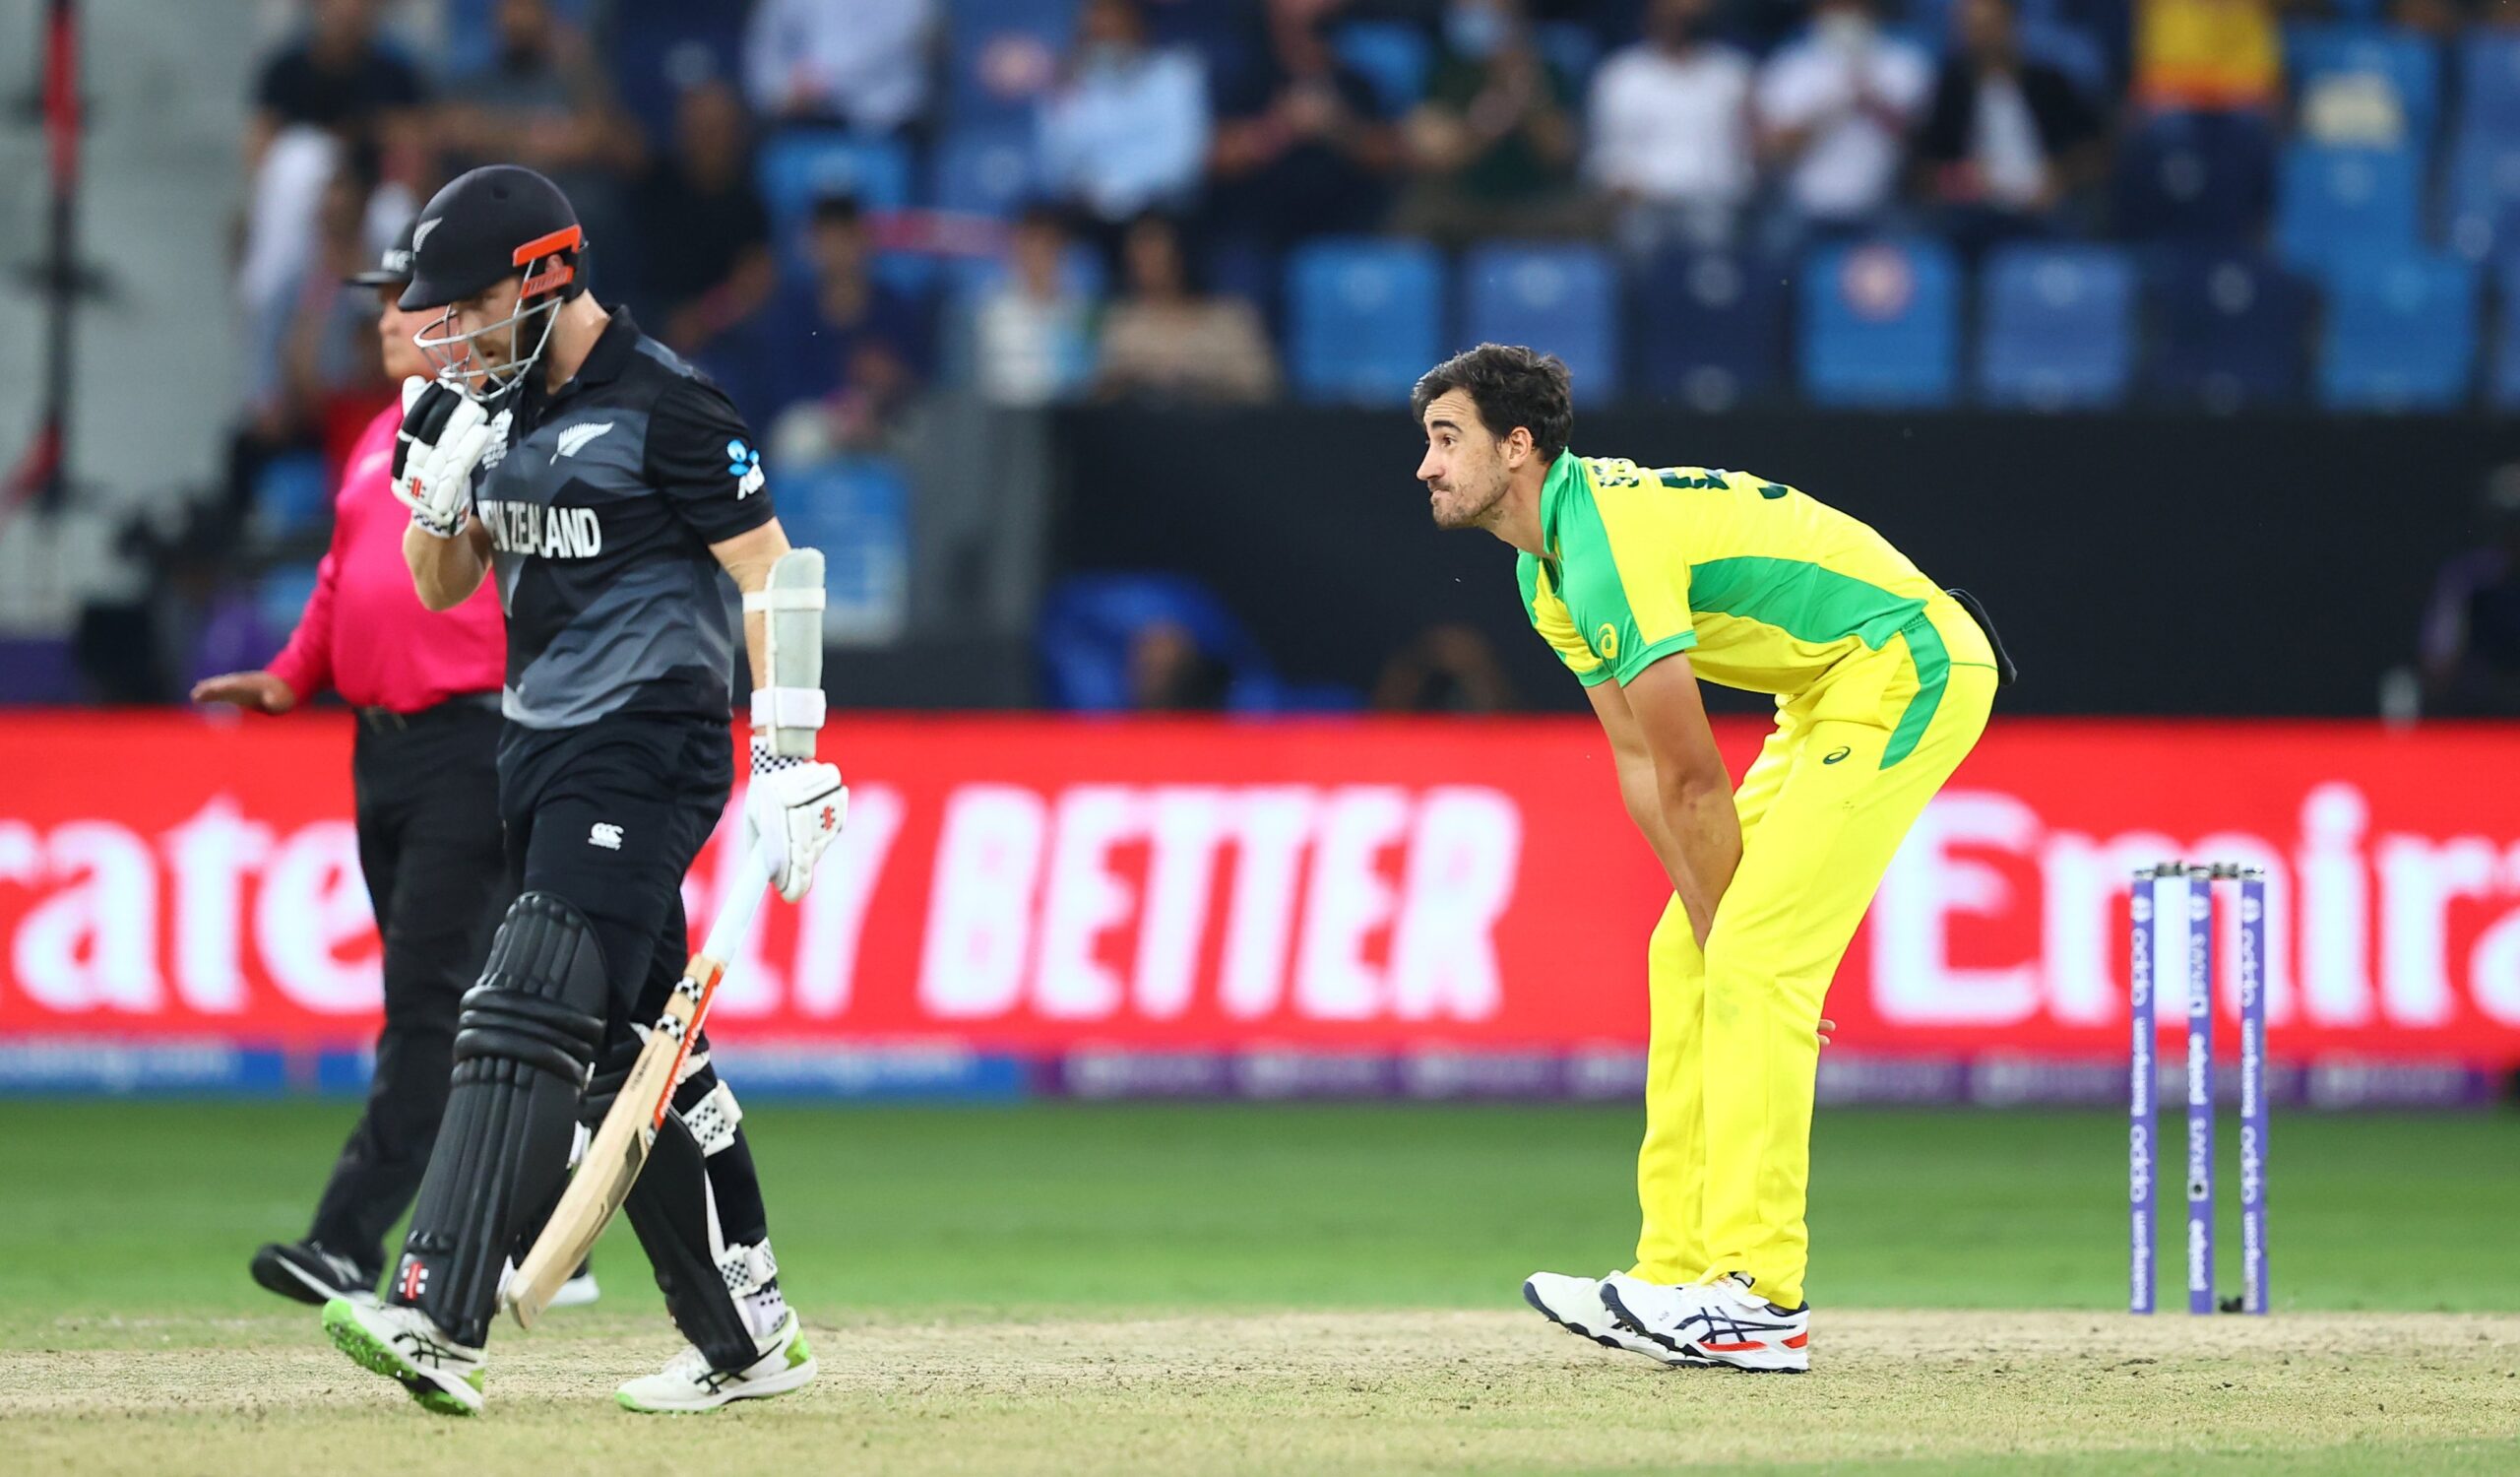 T20 WORLD CUP FINAL2021: केन विलियमसन ने अकेले ही की कंगारुओं की जमकर धुलाई, ऑस्ट्रेलिया के सामने 173 रनों का लक्ष्य 3